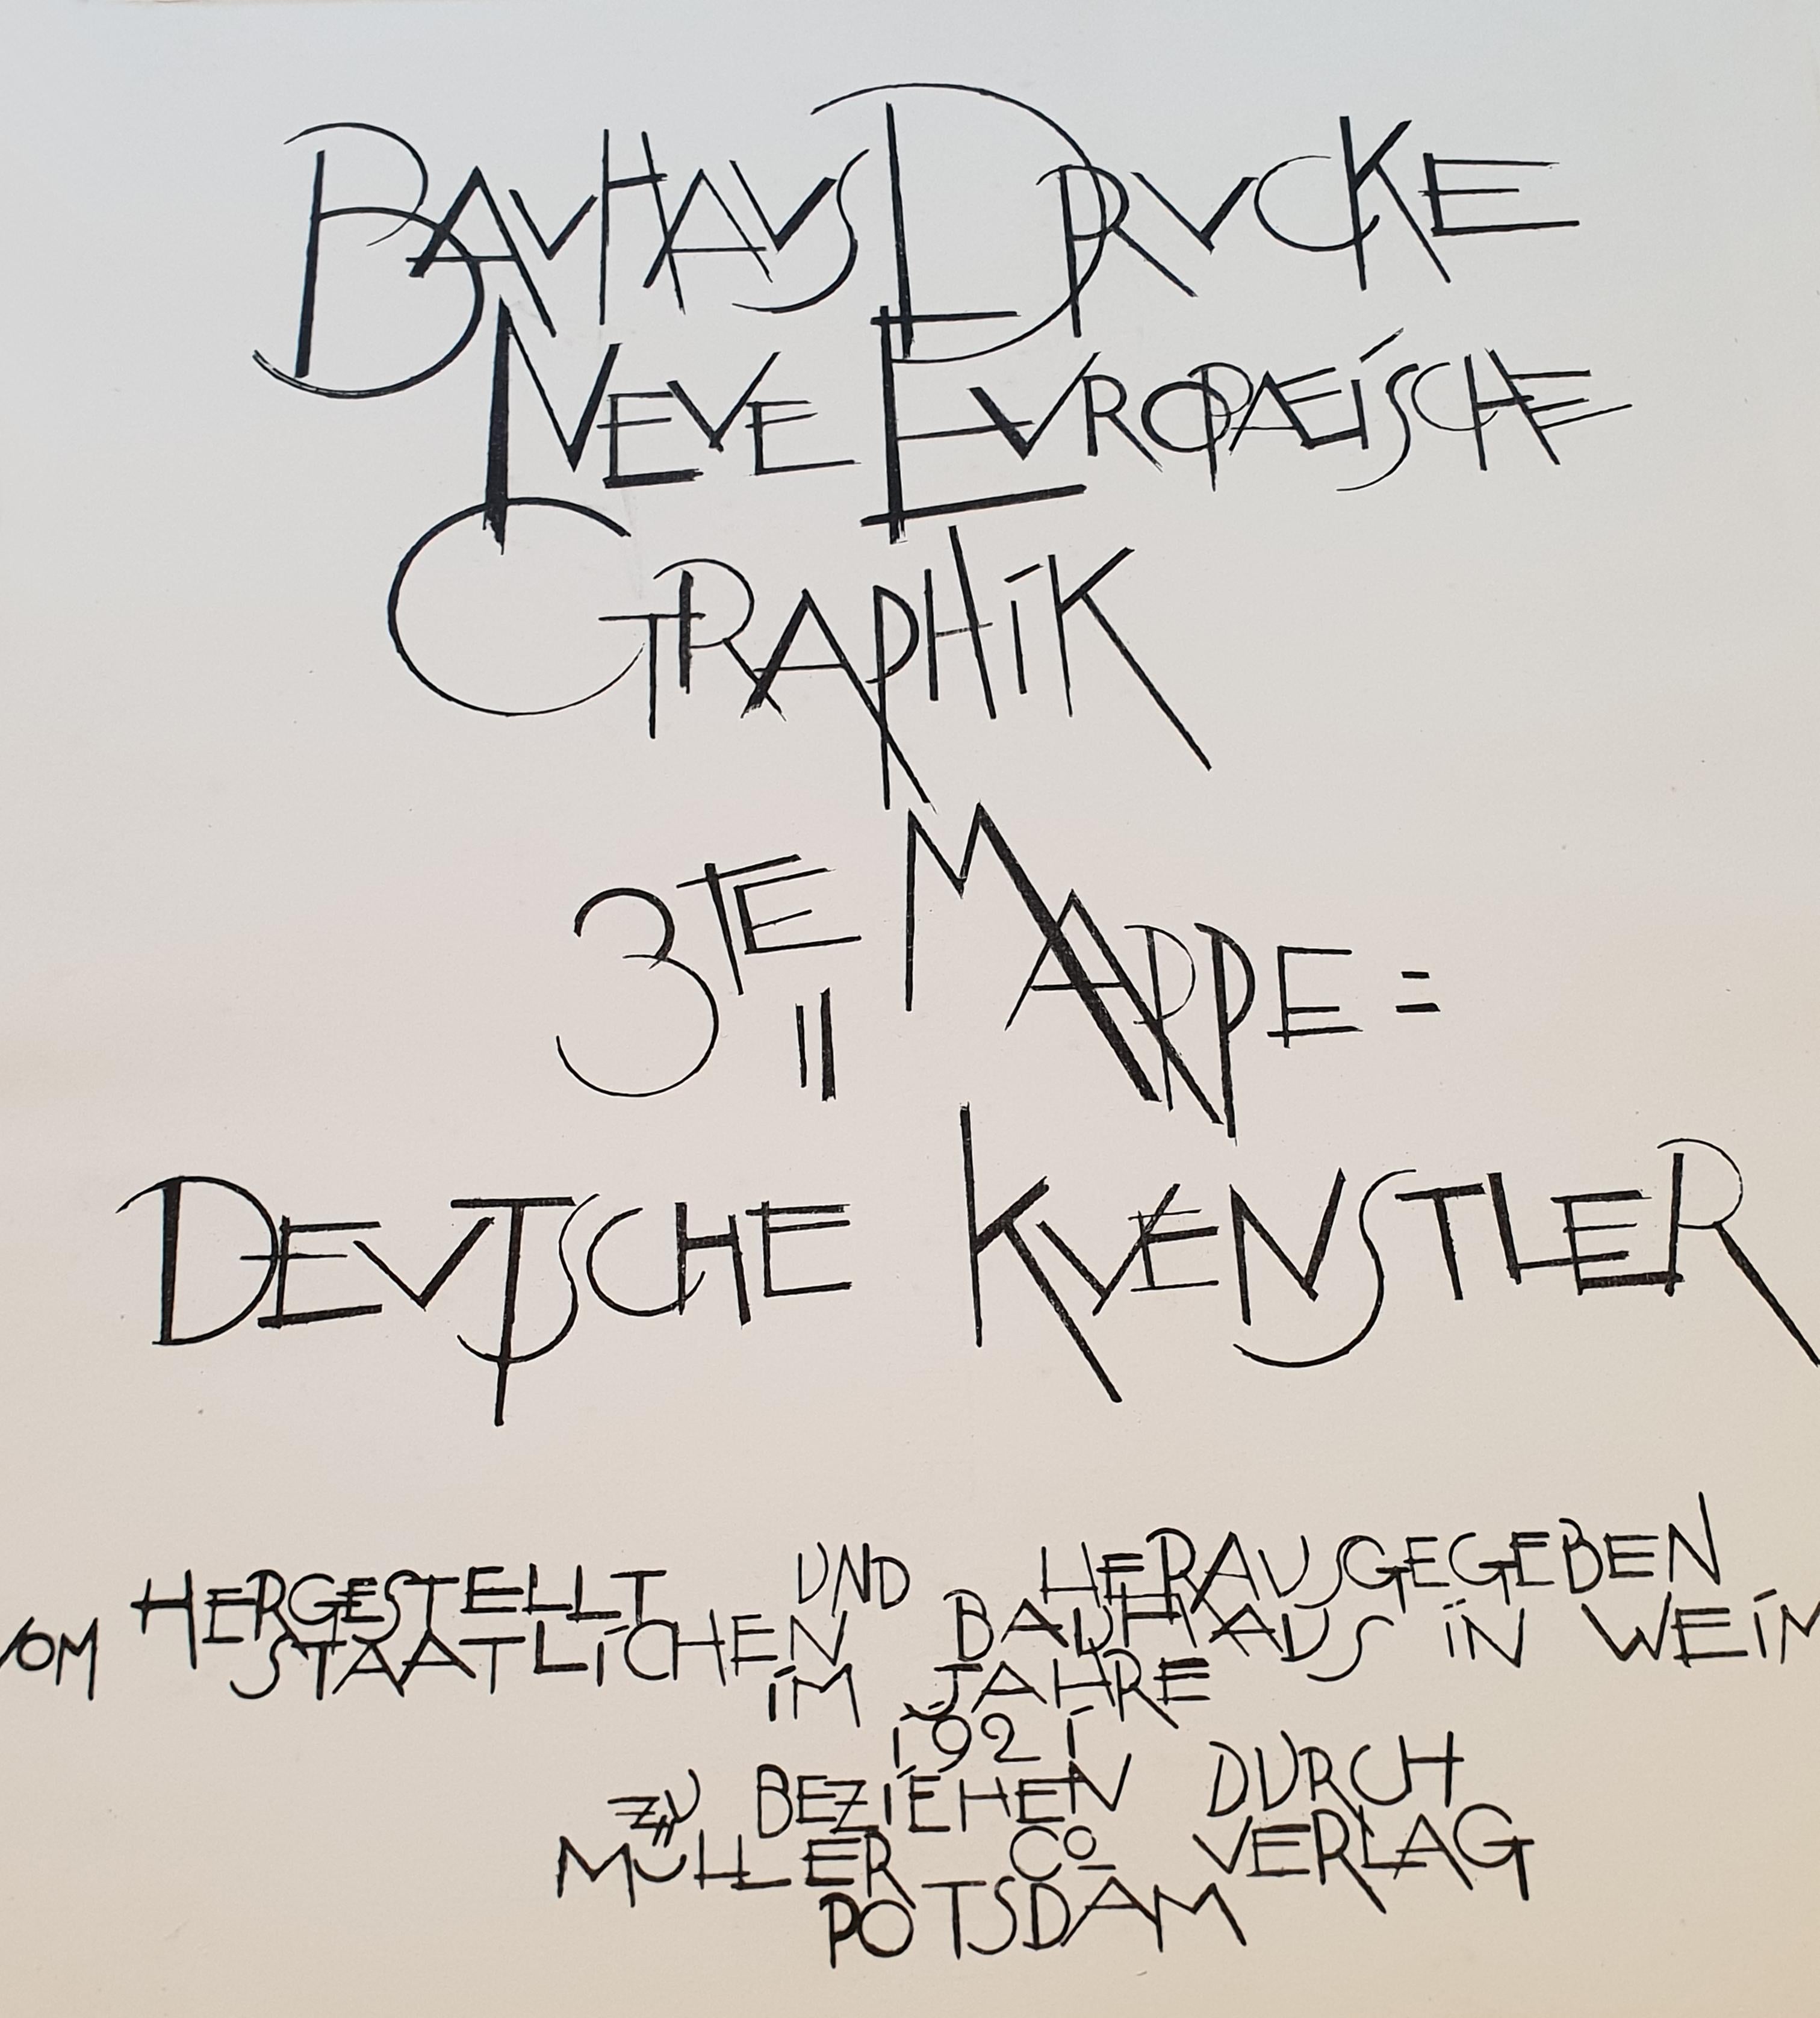 Le Bauhaus « Neuf europische Graphik », troisième portefeuille d'artistes allemands - Print de Unknown